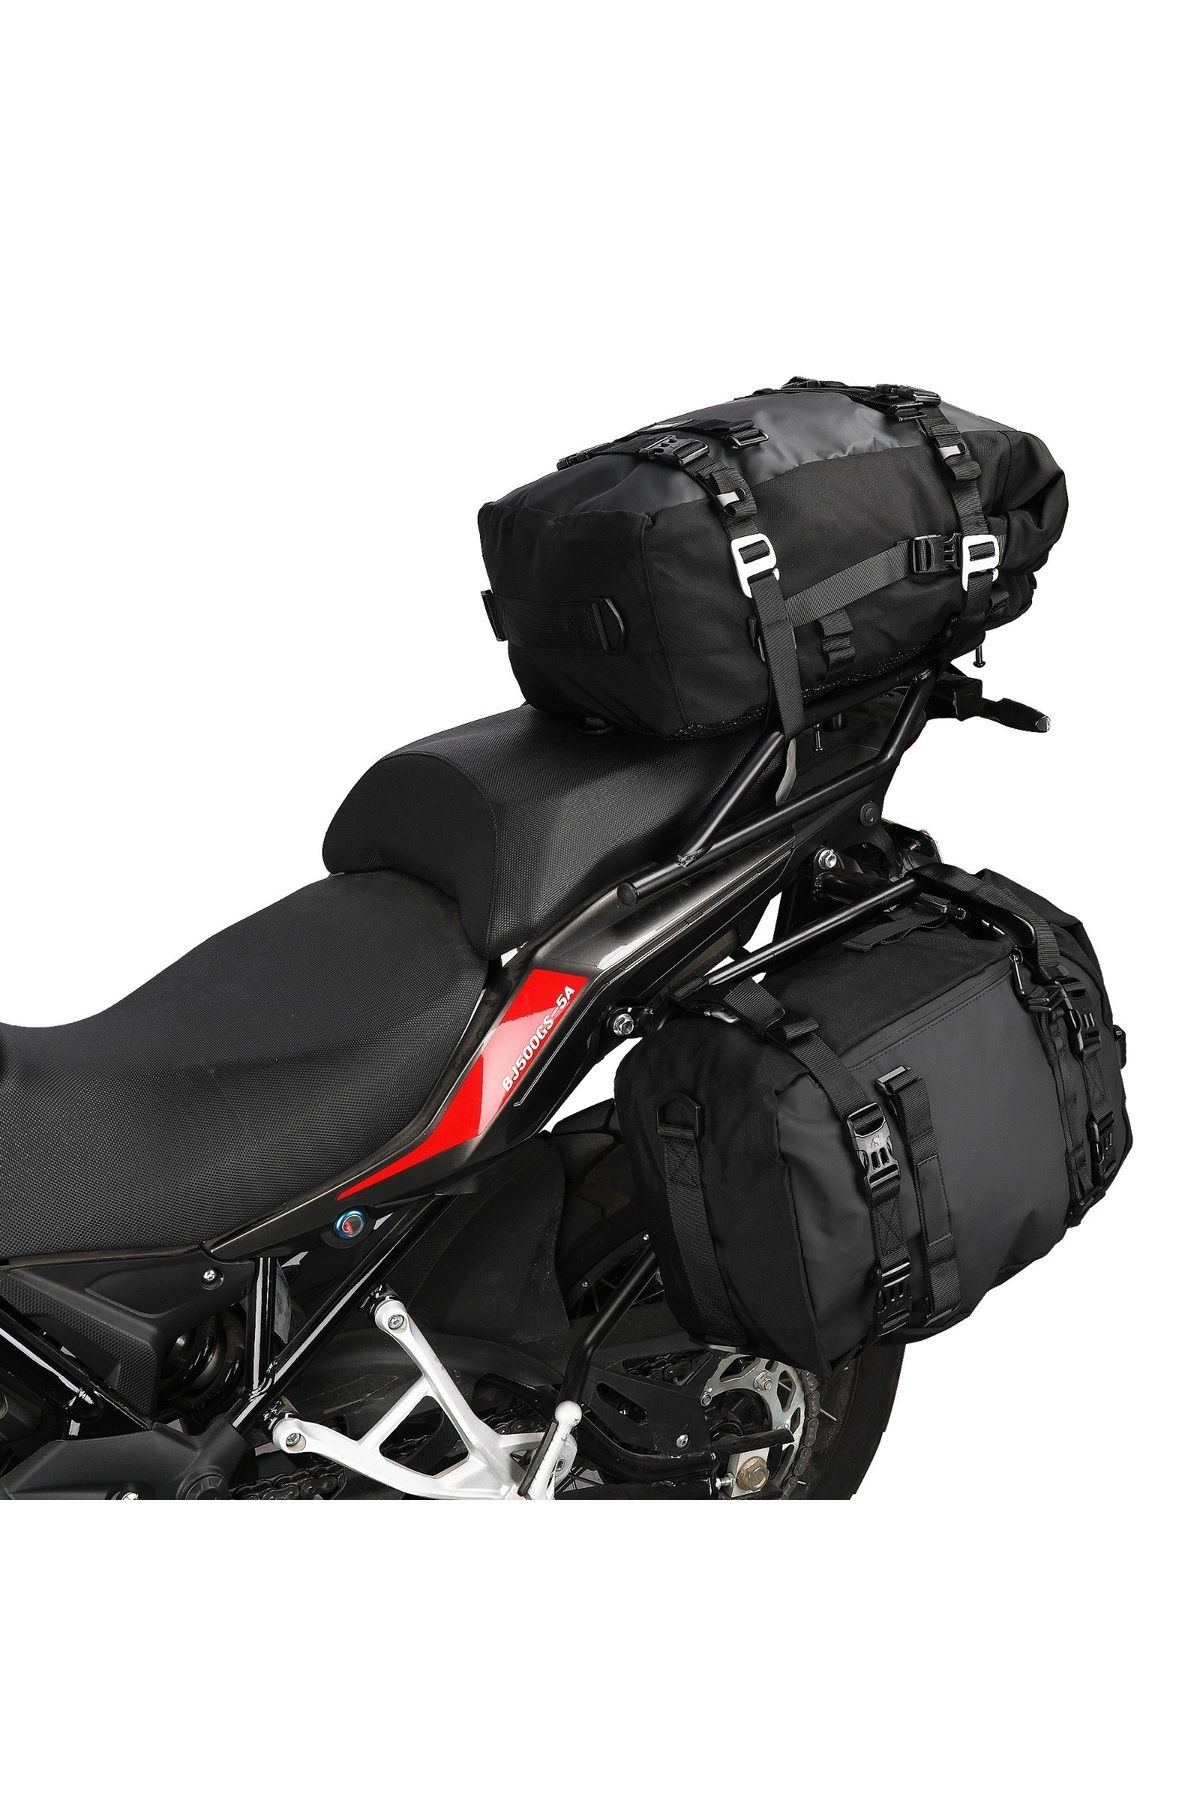 ebakbak Motosiklet Lüx Sırt Çantası,Arka ve Yan Çanta Olma Özellikli Waterproof Motor Touring Çanta 20 lt